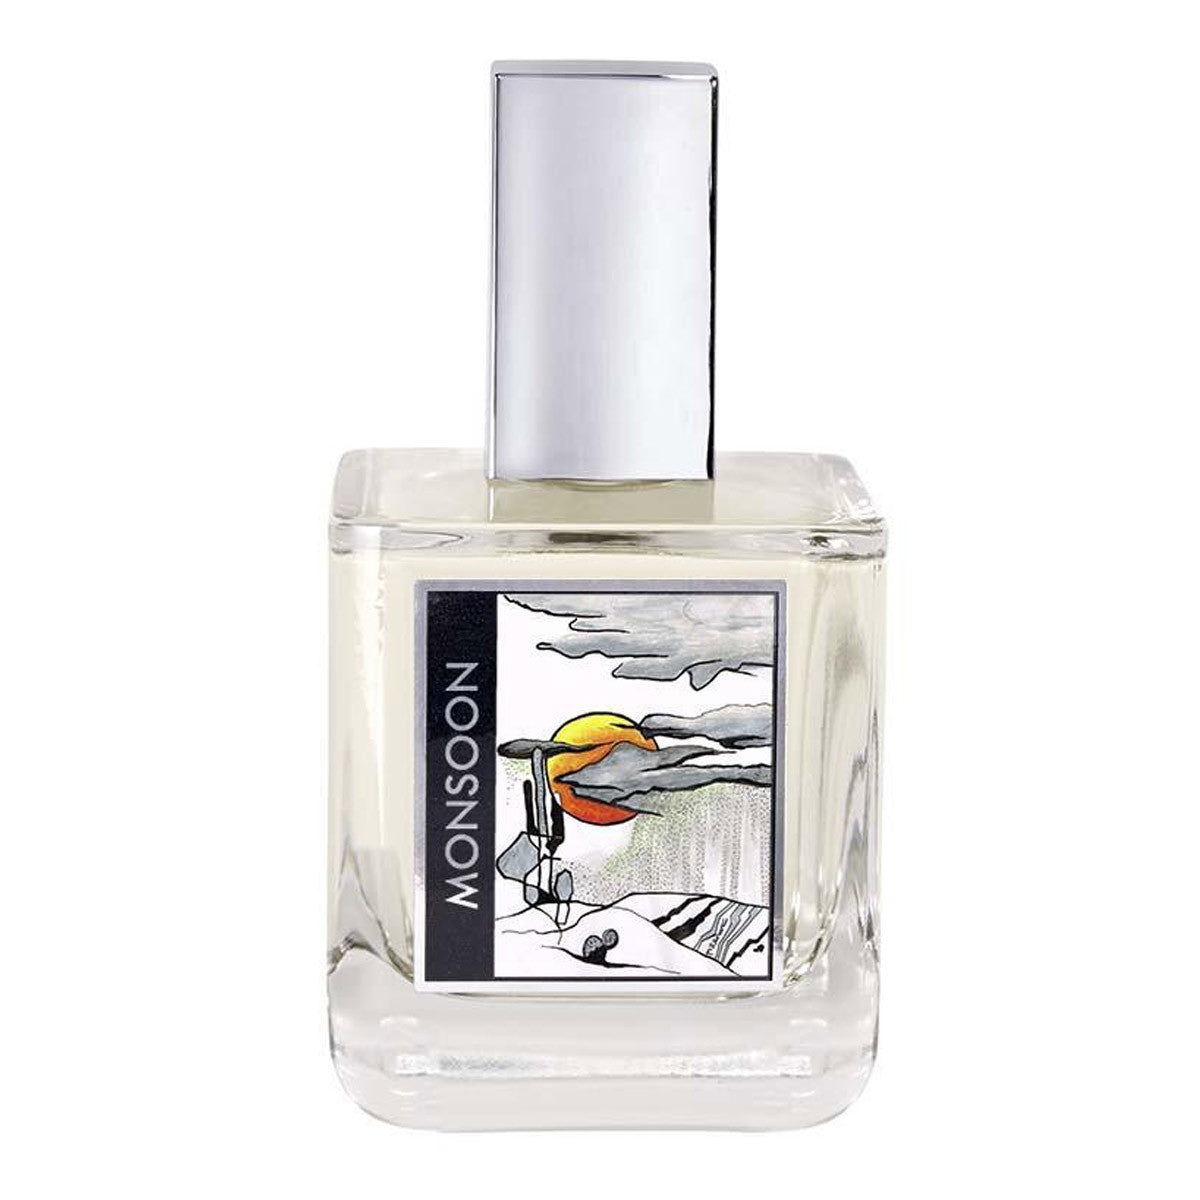 Primary image of Monsoon Eau de Parfum